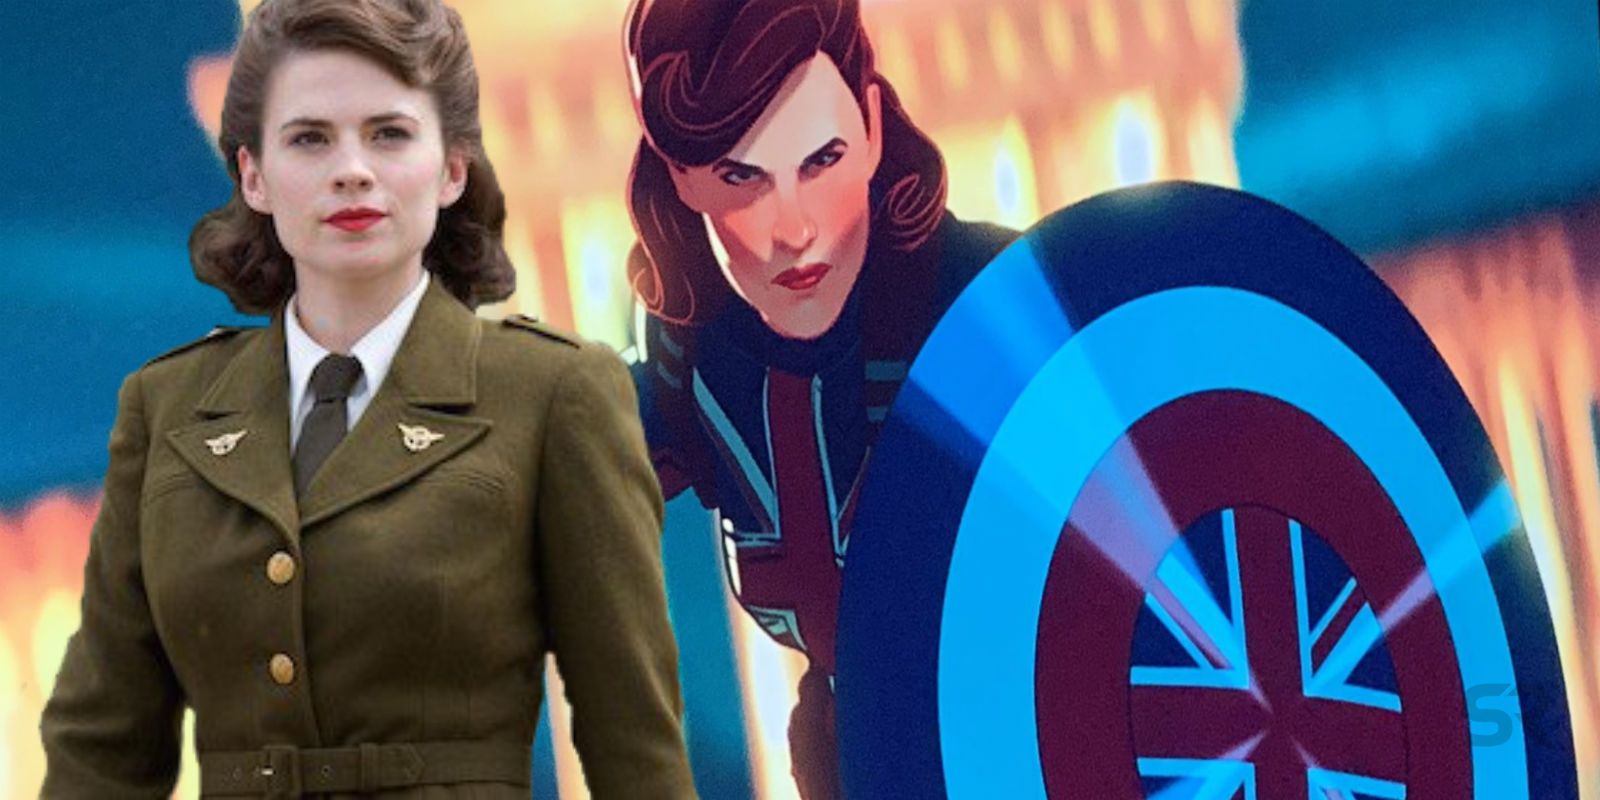 10. Peggy Carter Became Captain America. 